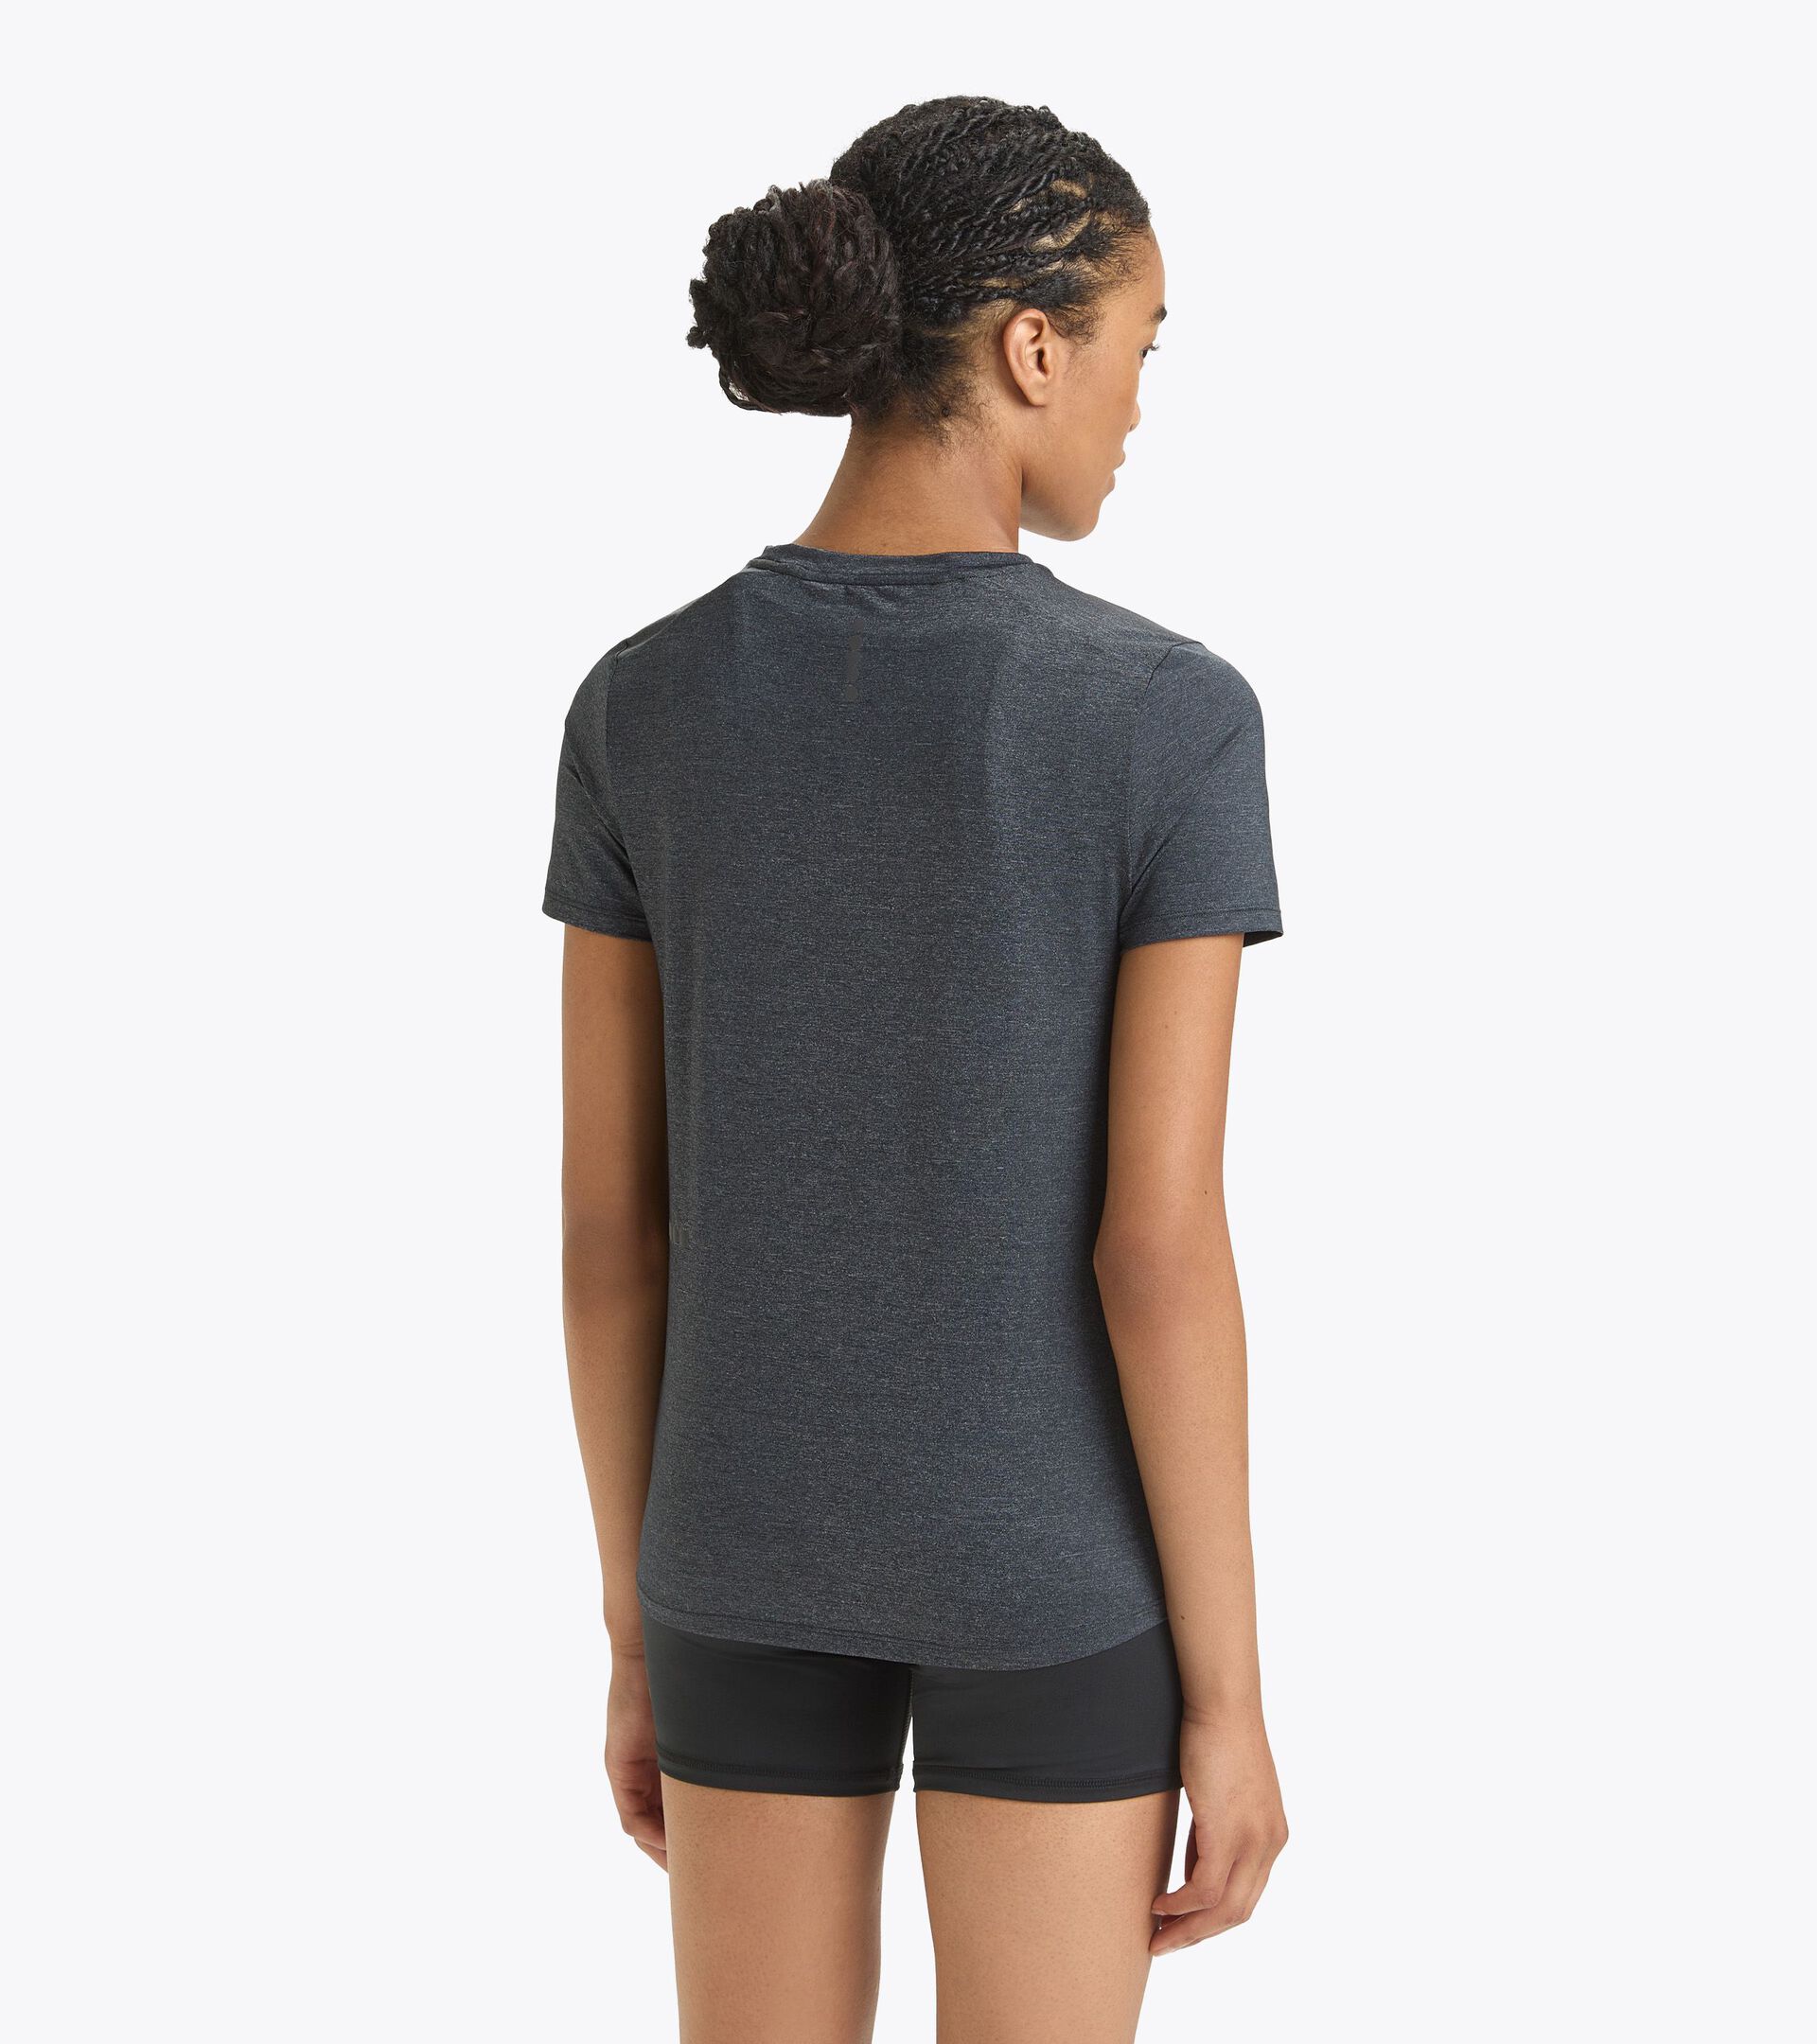 Technical running shirt - Women L. SS T-SHIRT TECH BLACK - Diadora